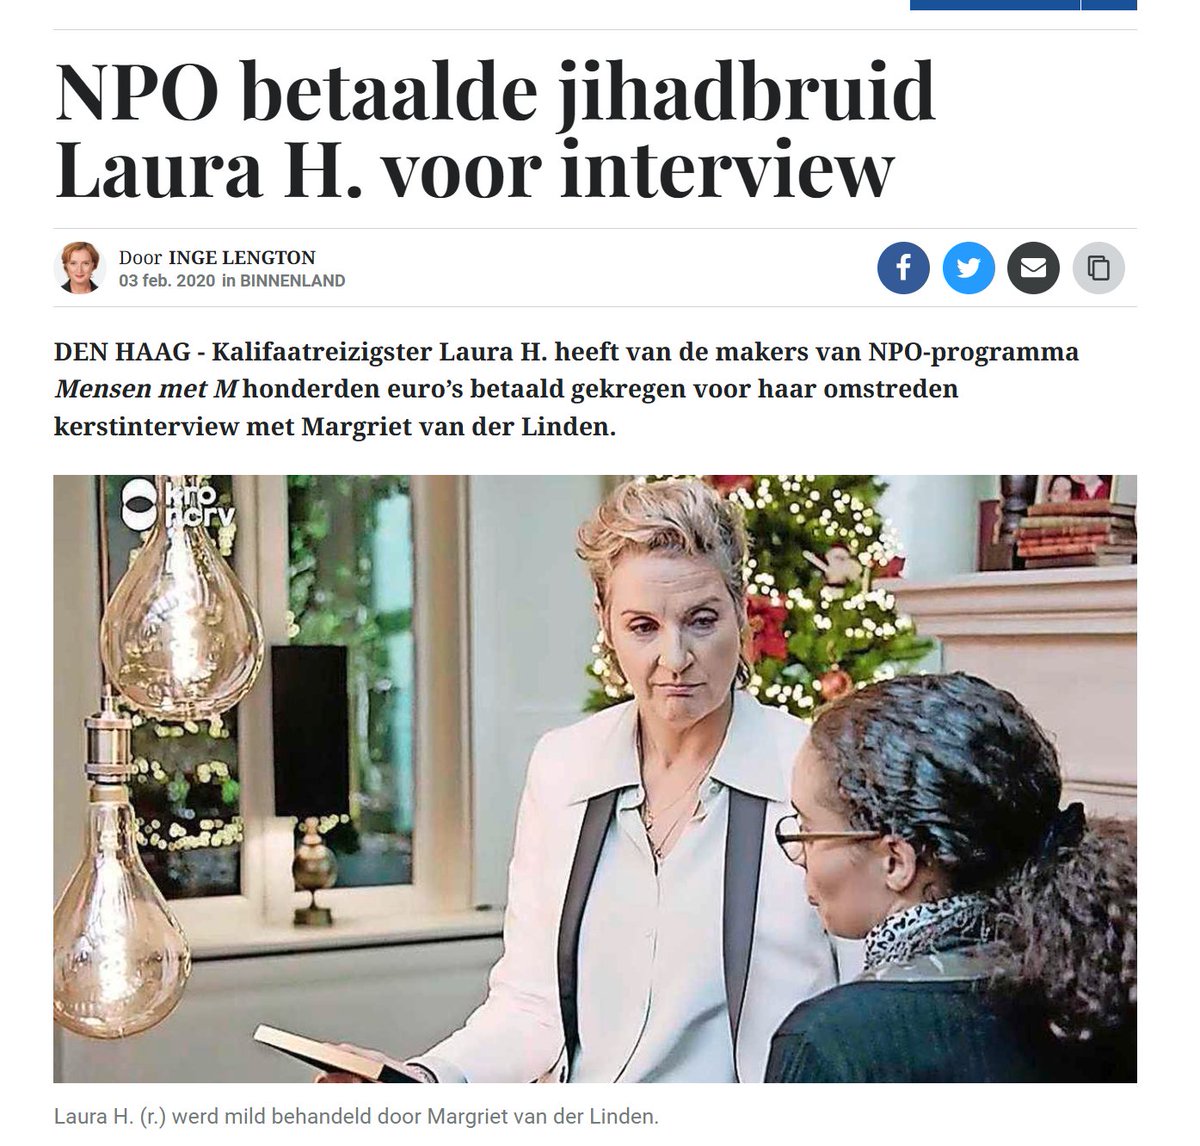 Dit was gewoon een kopie van het interview van Margriet van der Linden met Laura H., het kalifaatmeisje. Maar ja, NPO he...dan weet weet je het wel. En Laura H. werd nog betaald ook! Hoeveel zou Soumaya Sahla hebben gekregen?